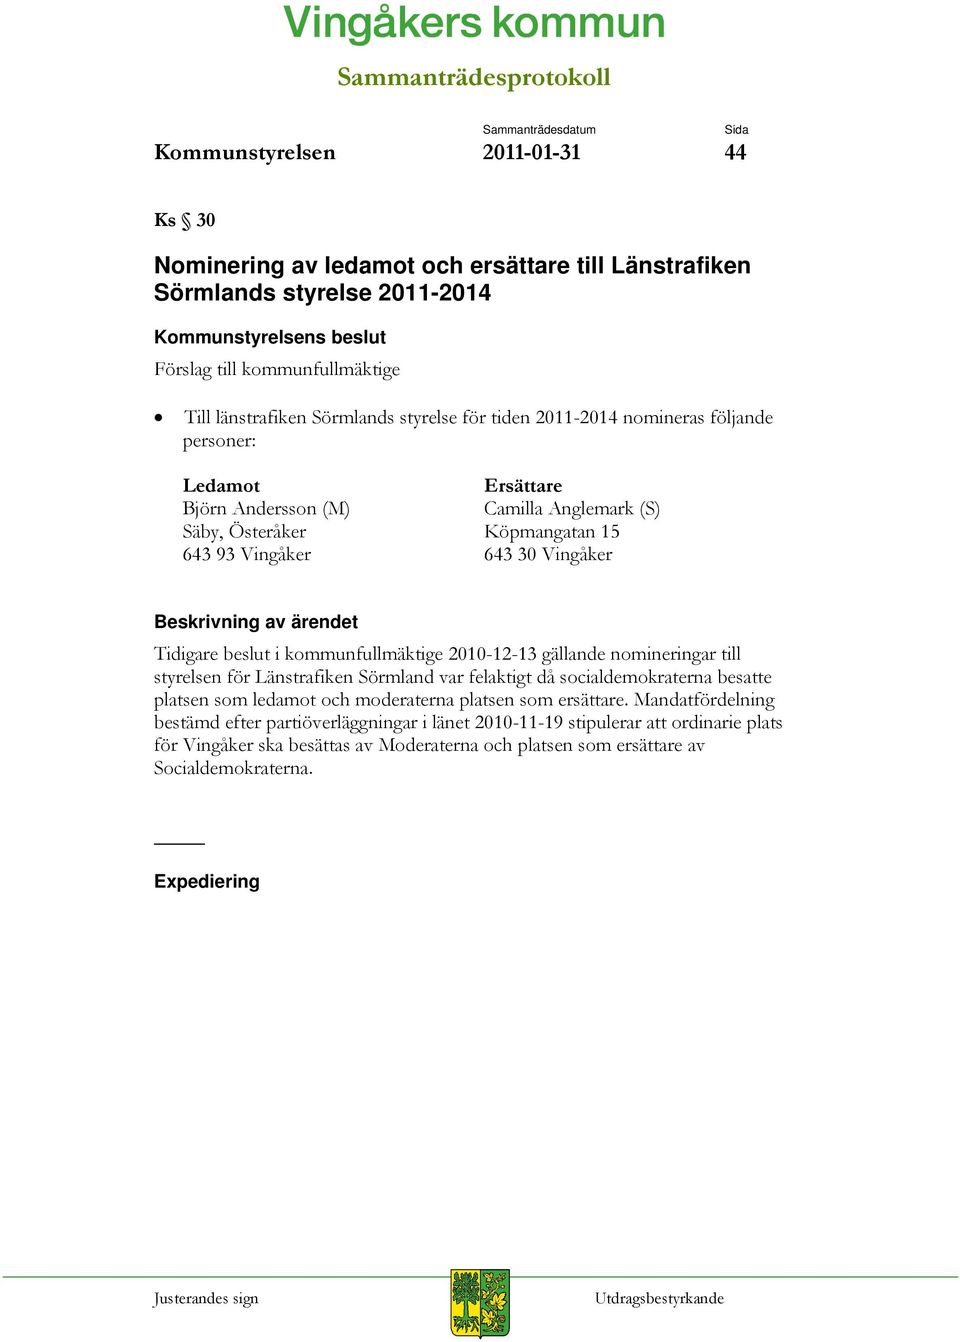 kommunfullmäktige 2010-12-13 gällande nomineringar till styrelsen för Länstrafiken Sörmland var felaktigt då socialdemokraterna besatte platsen som ledamot och moderaterna platsen som ersättare.